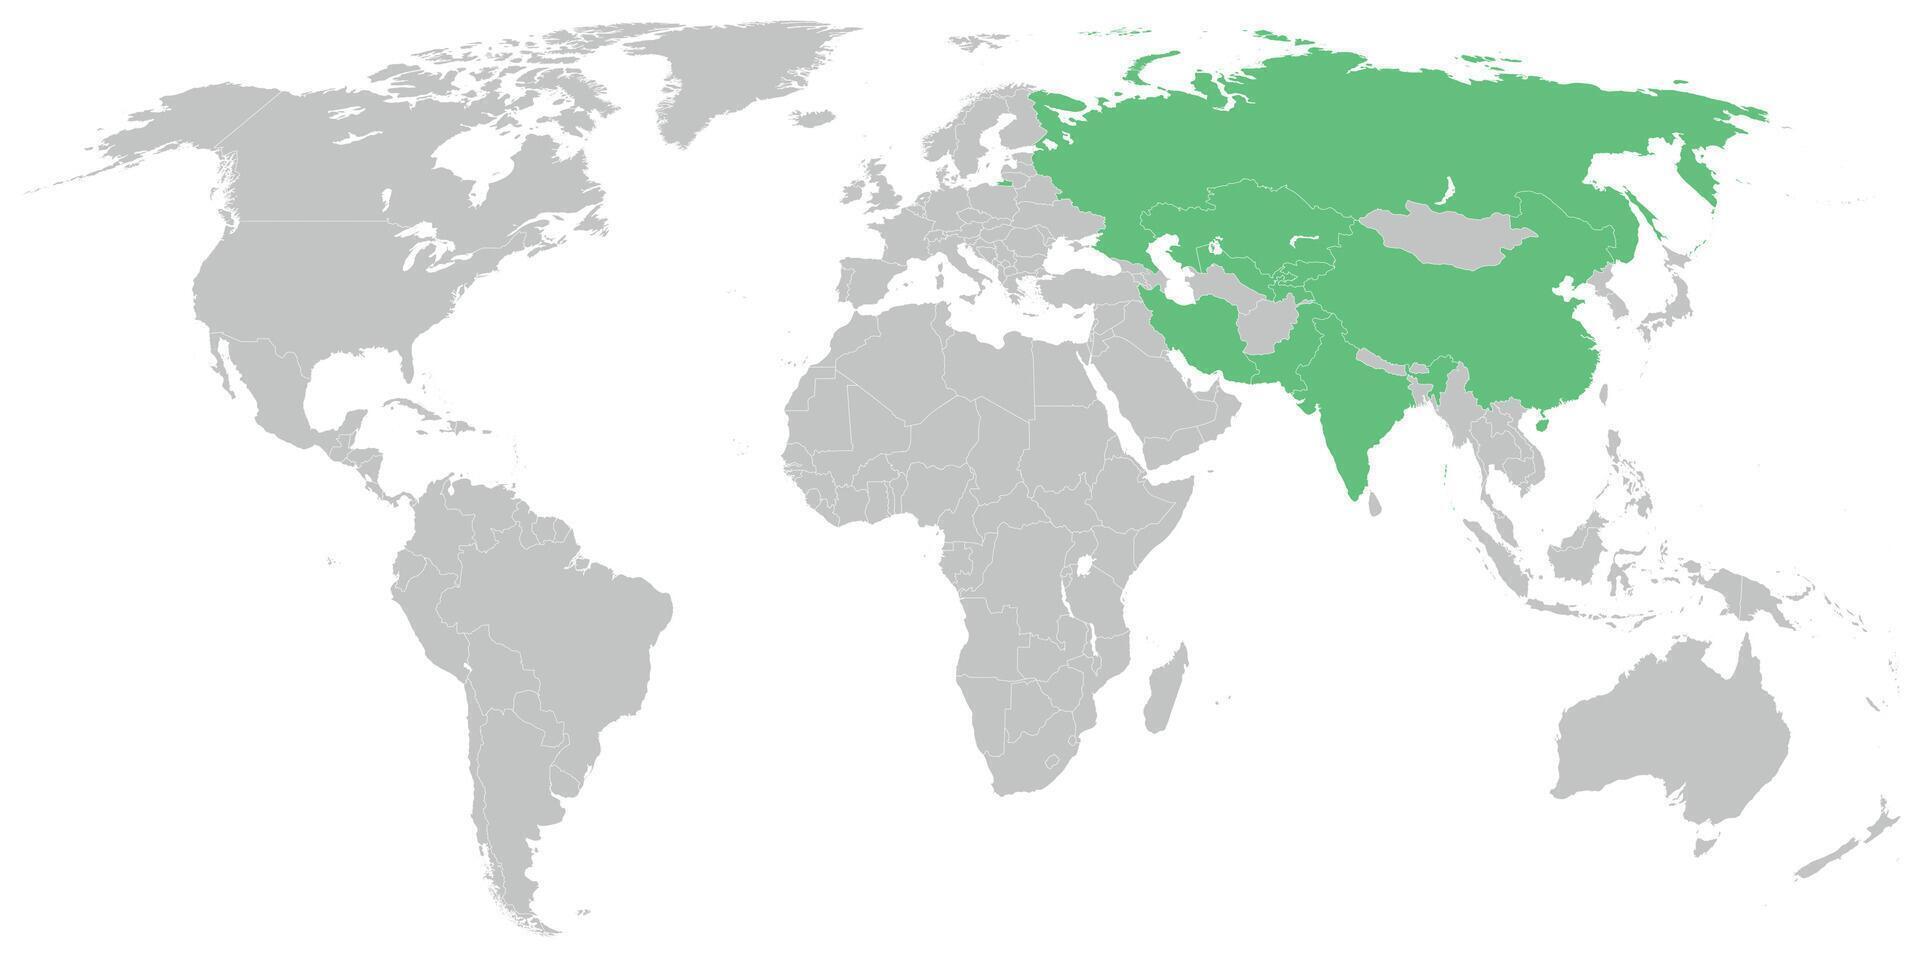 Shanghai Zusammenarbeit Organisation Mitglied Zustände auf Karte von das Welt vektor